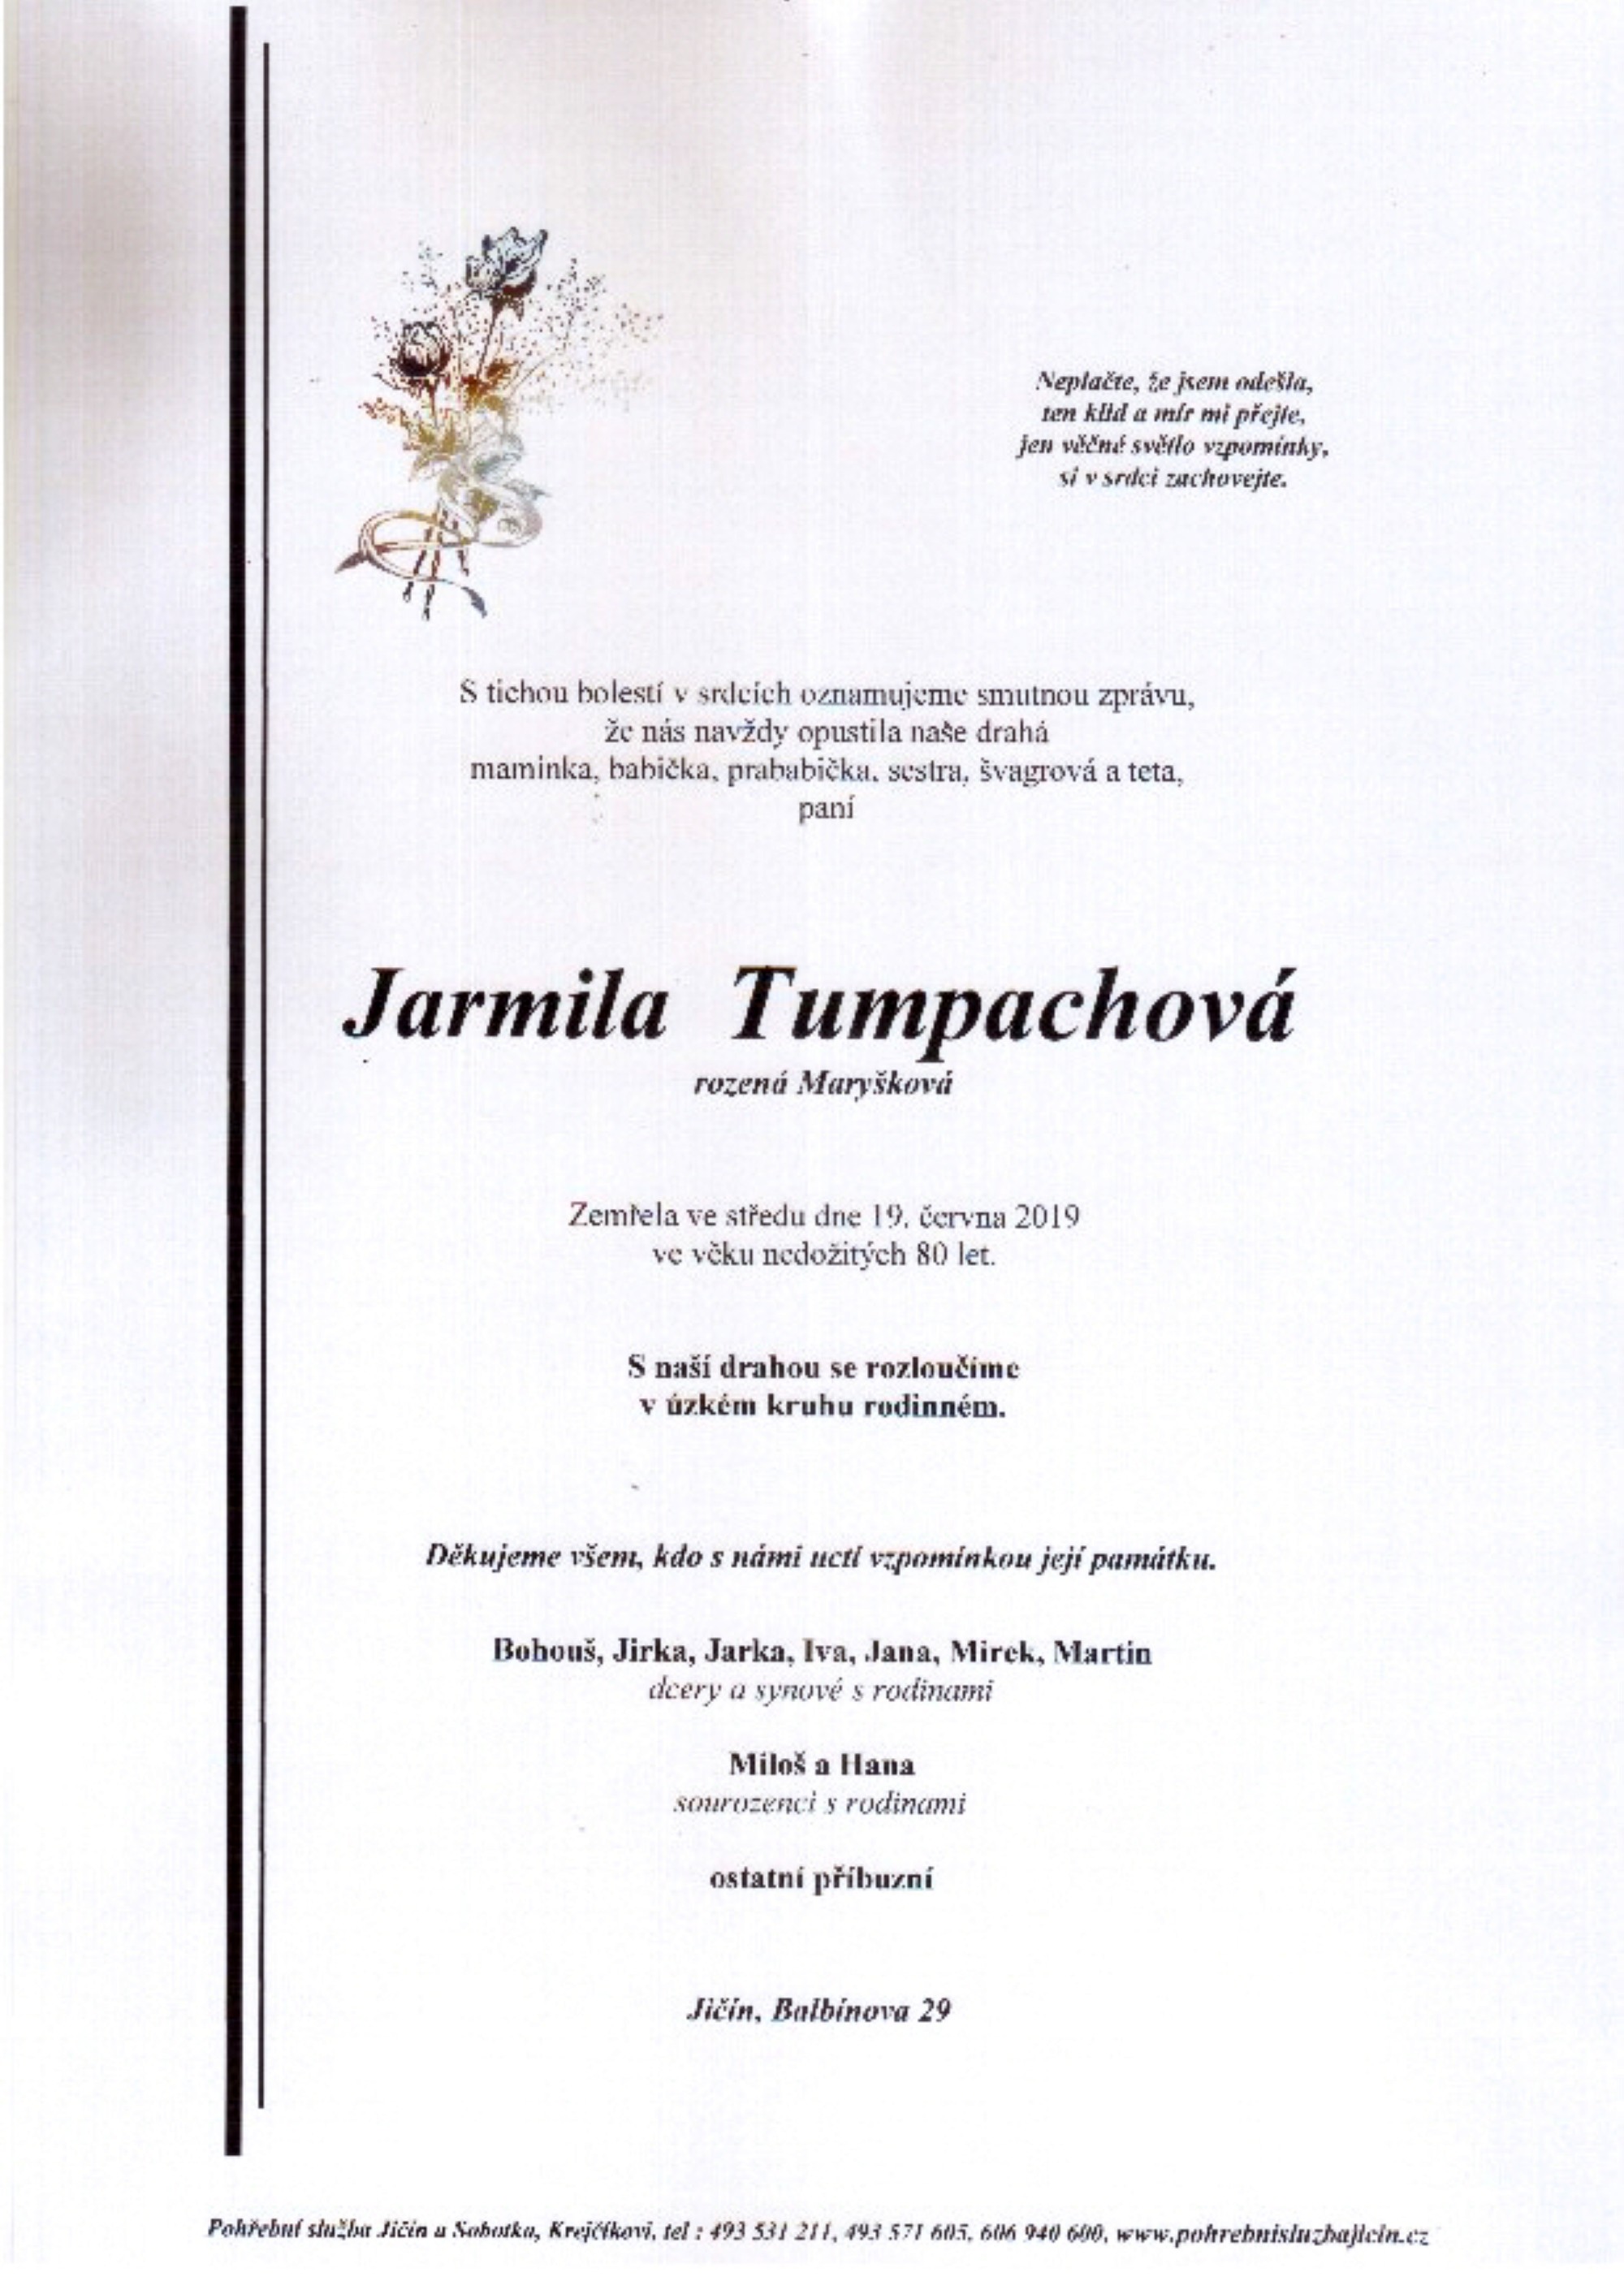 Jarmila Tumpachová